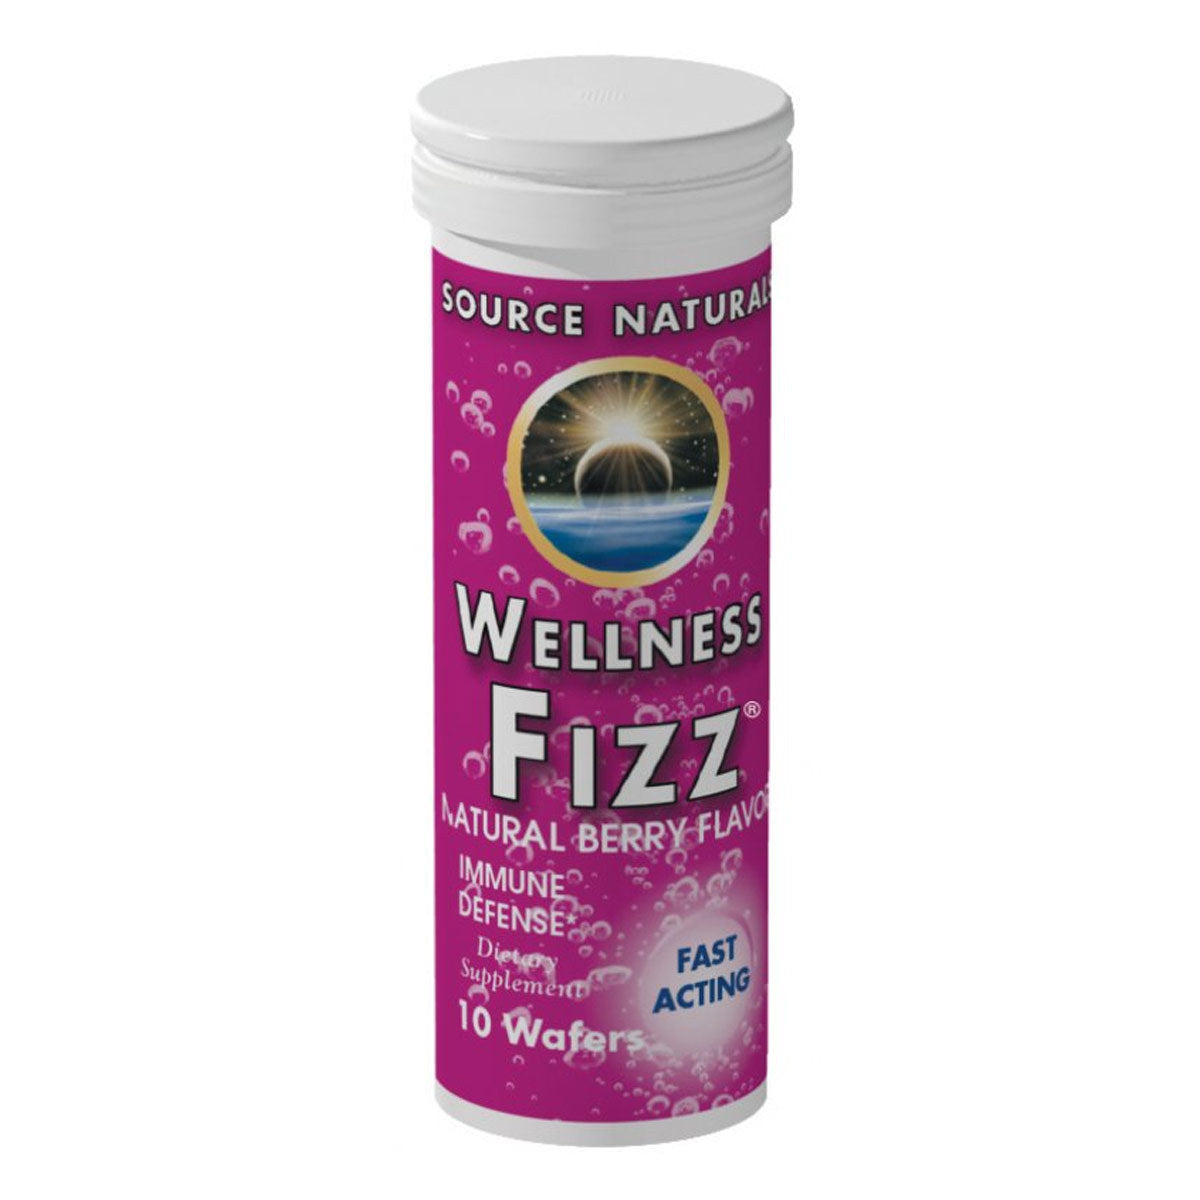 Primary image of Wellness Fizz - Tangerine